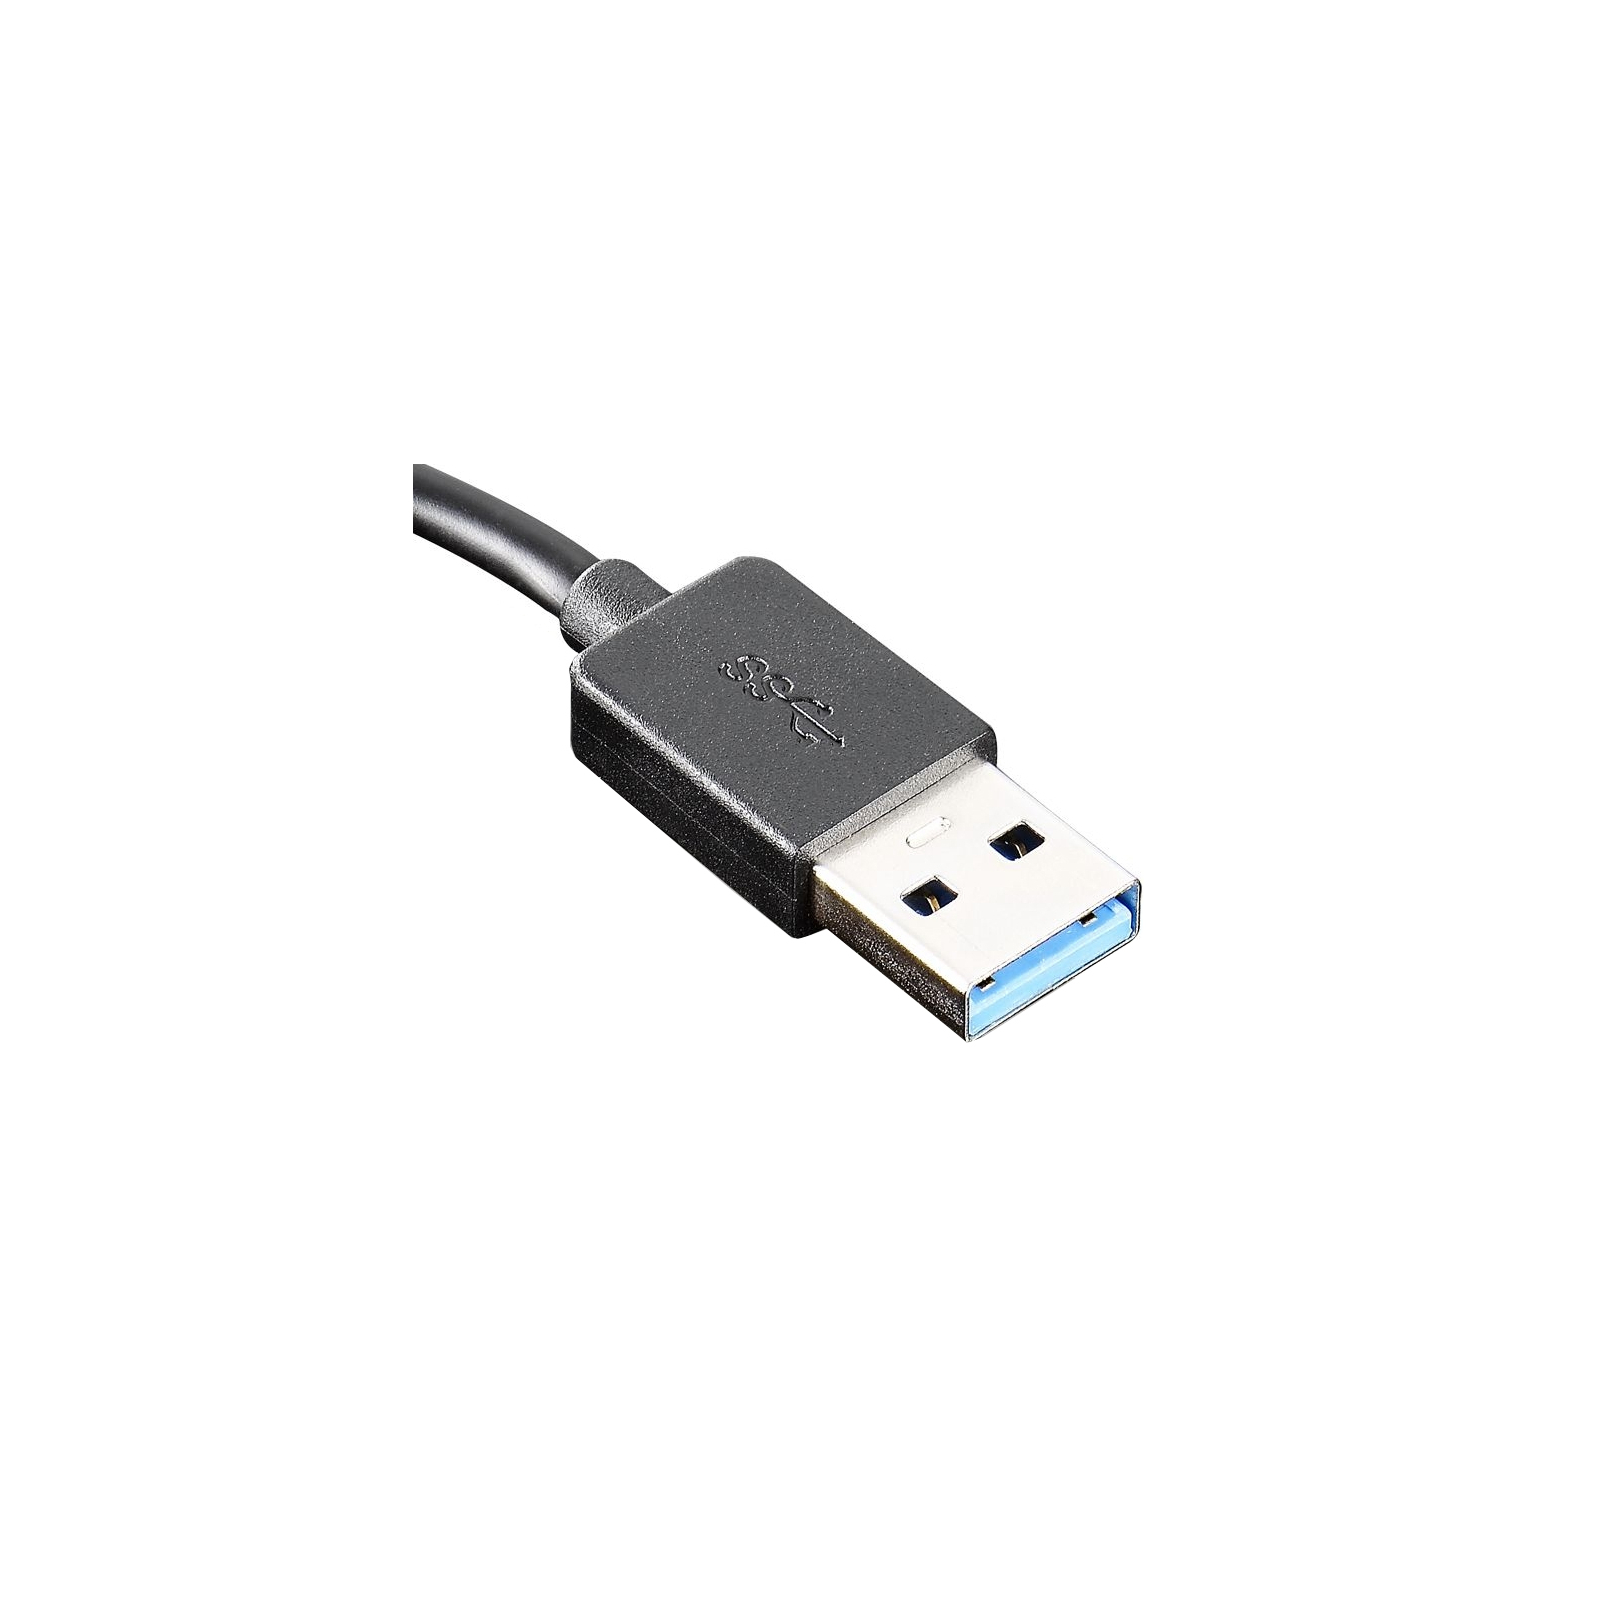 Перехідник Lenovo ThinkPad USB 3.0 Ethernet Adapter (4X90E51405) зображення 3